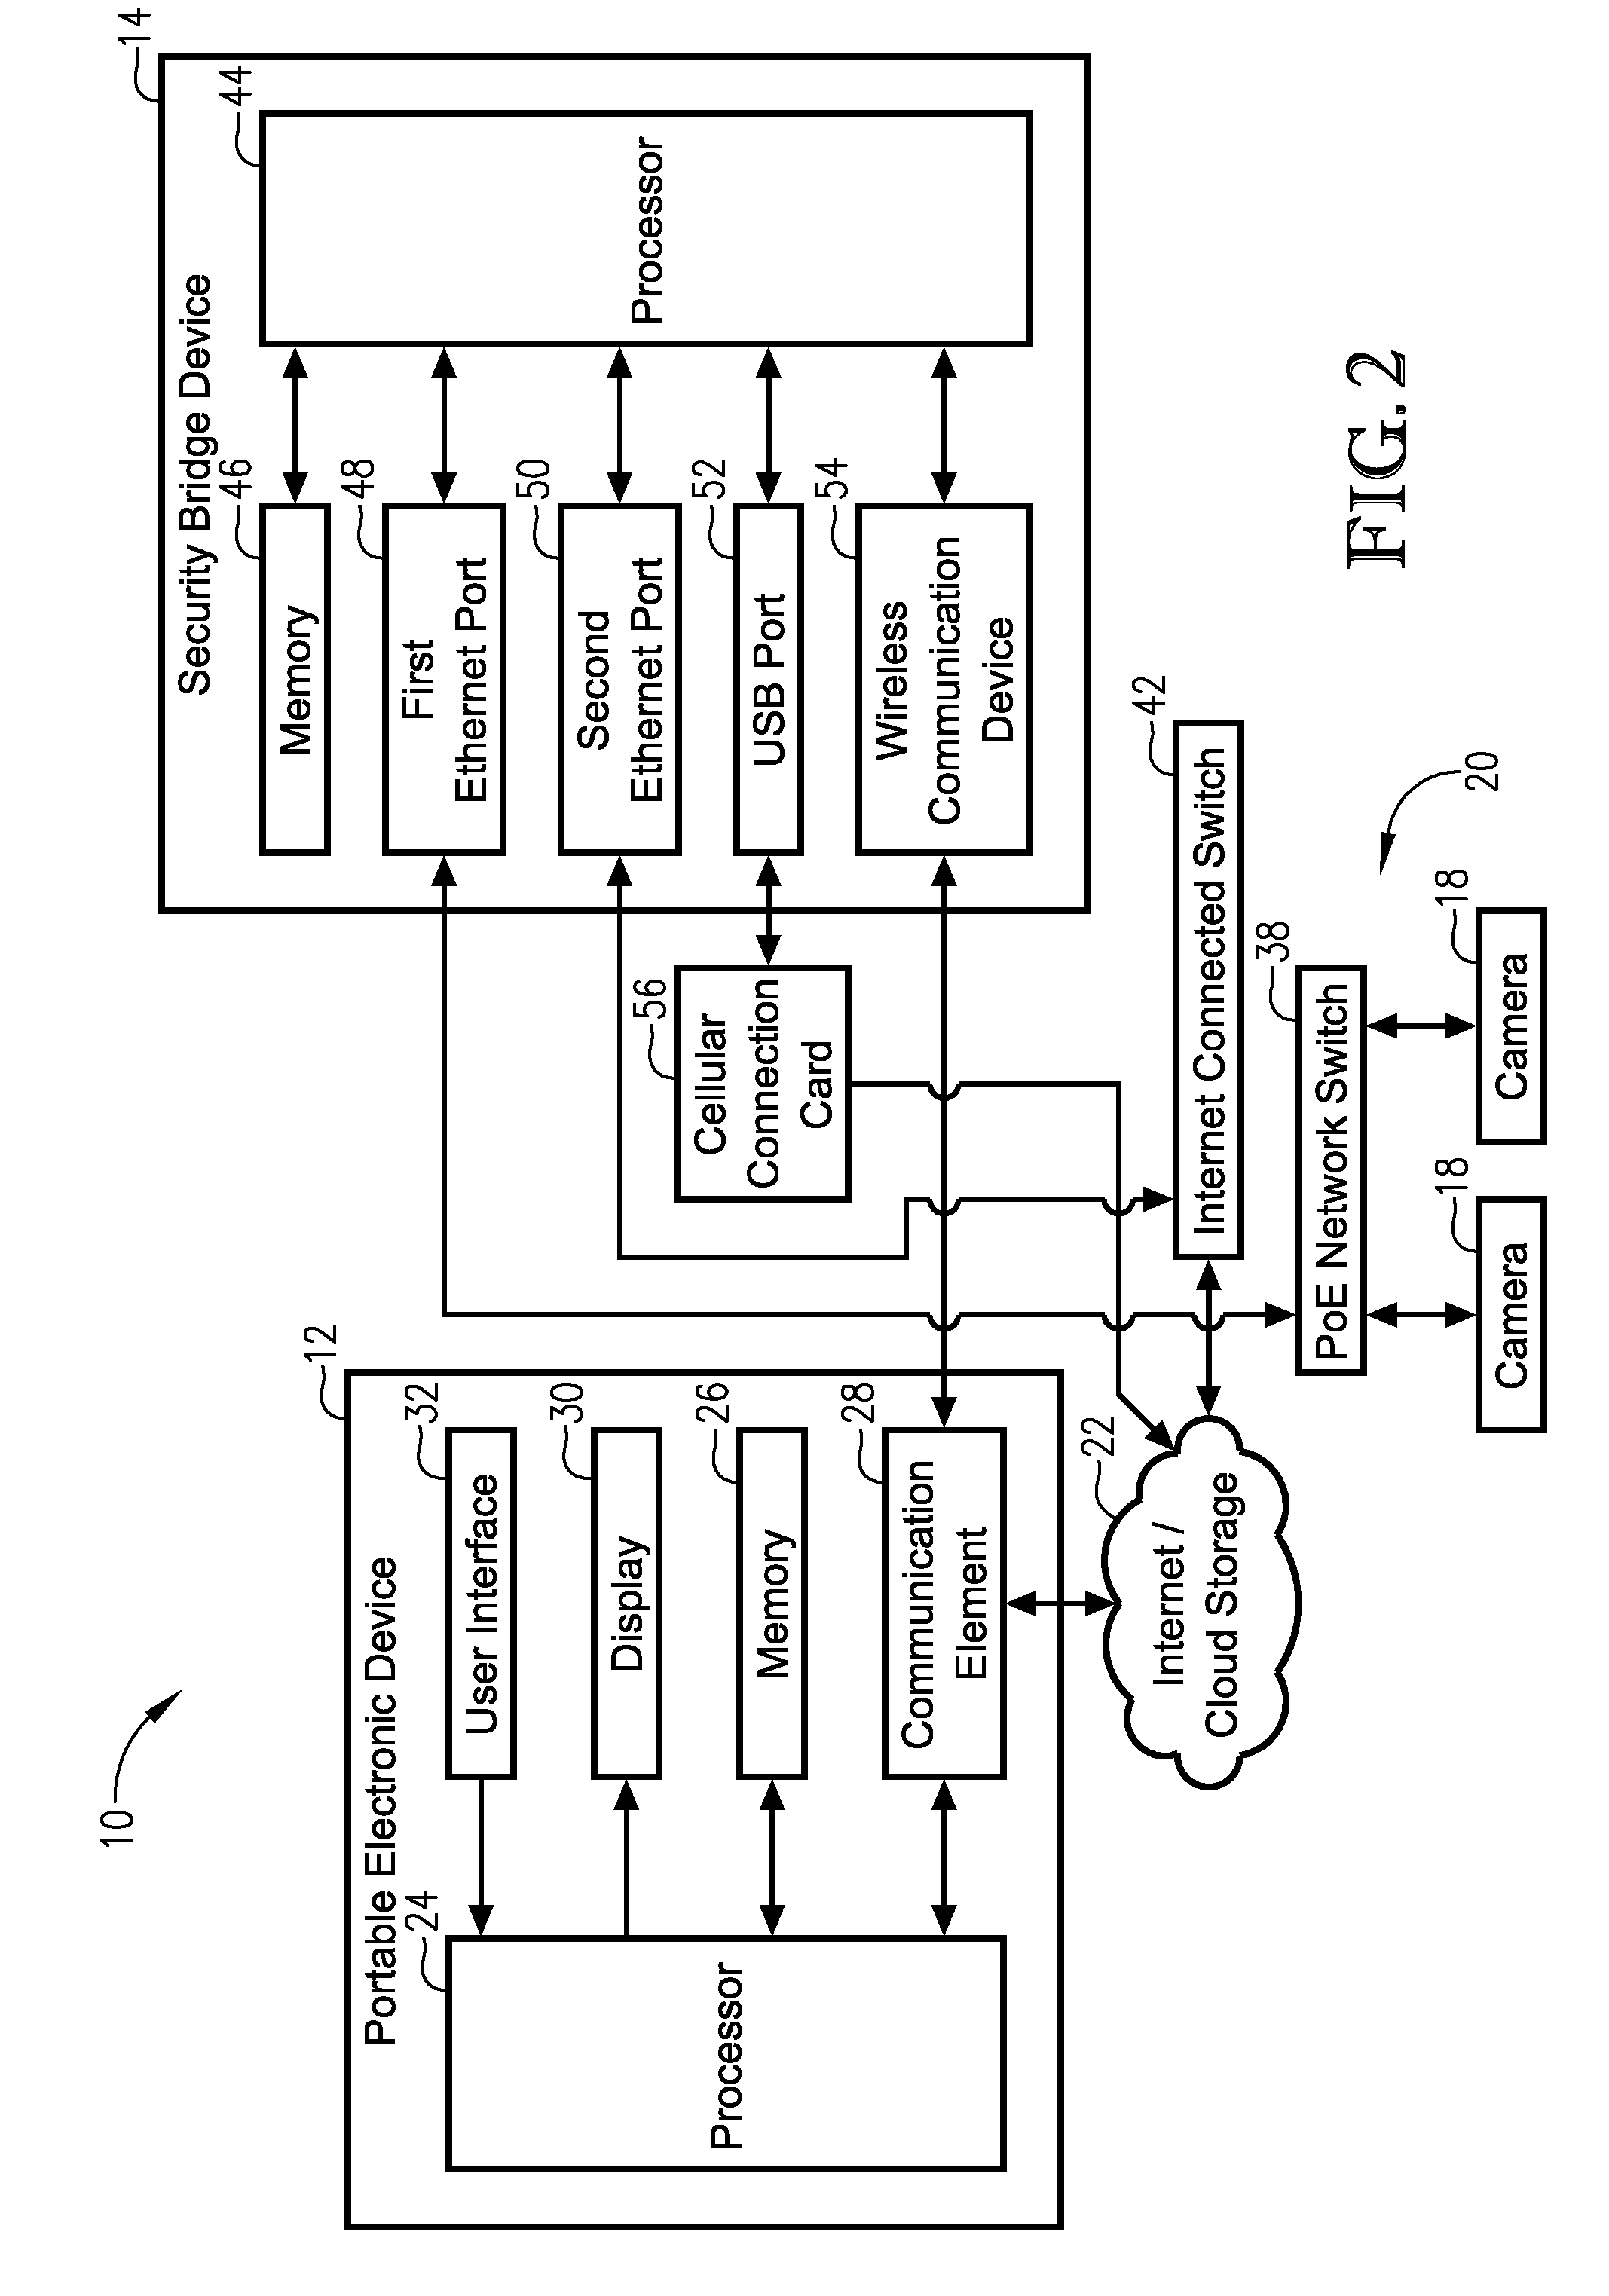 Method, computer program, and system for adjusting cameras